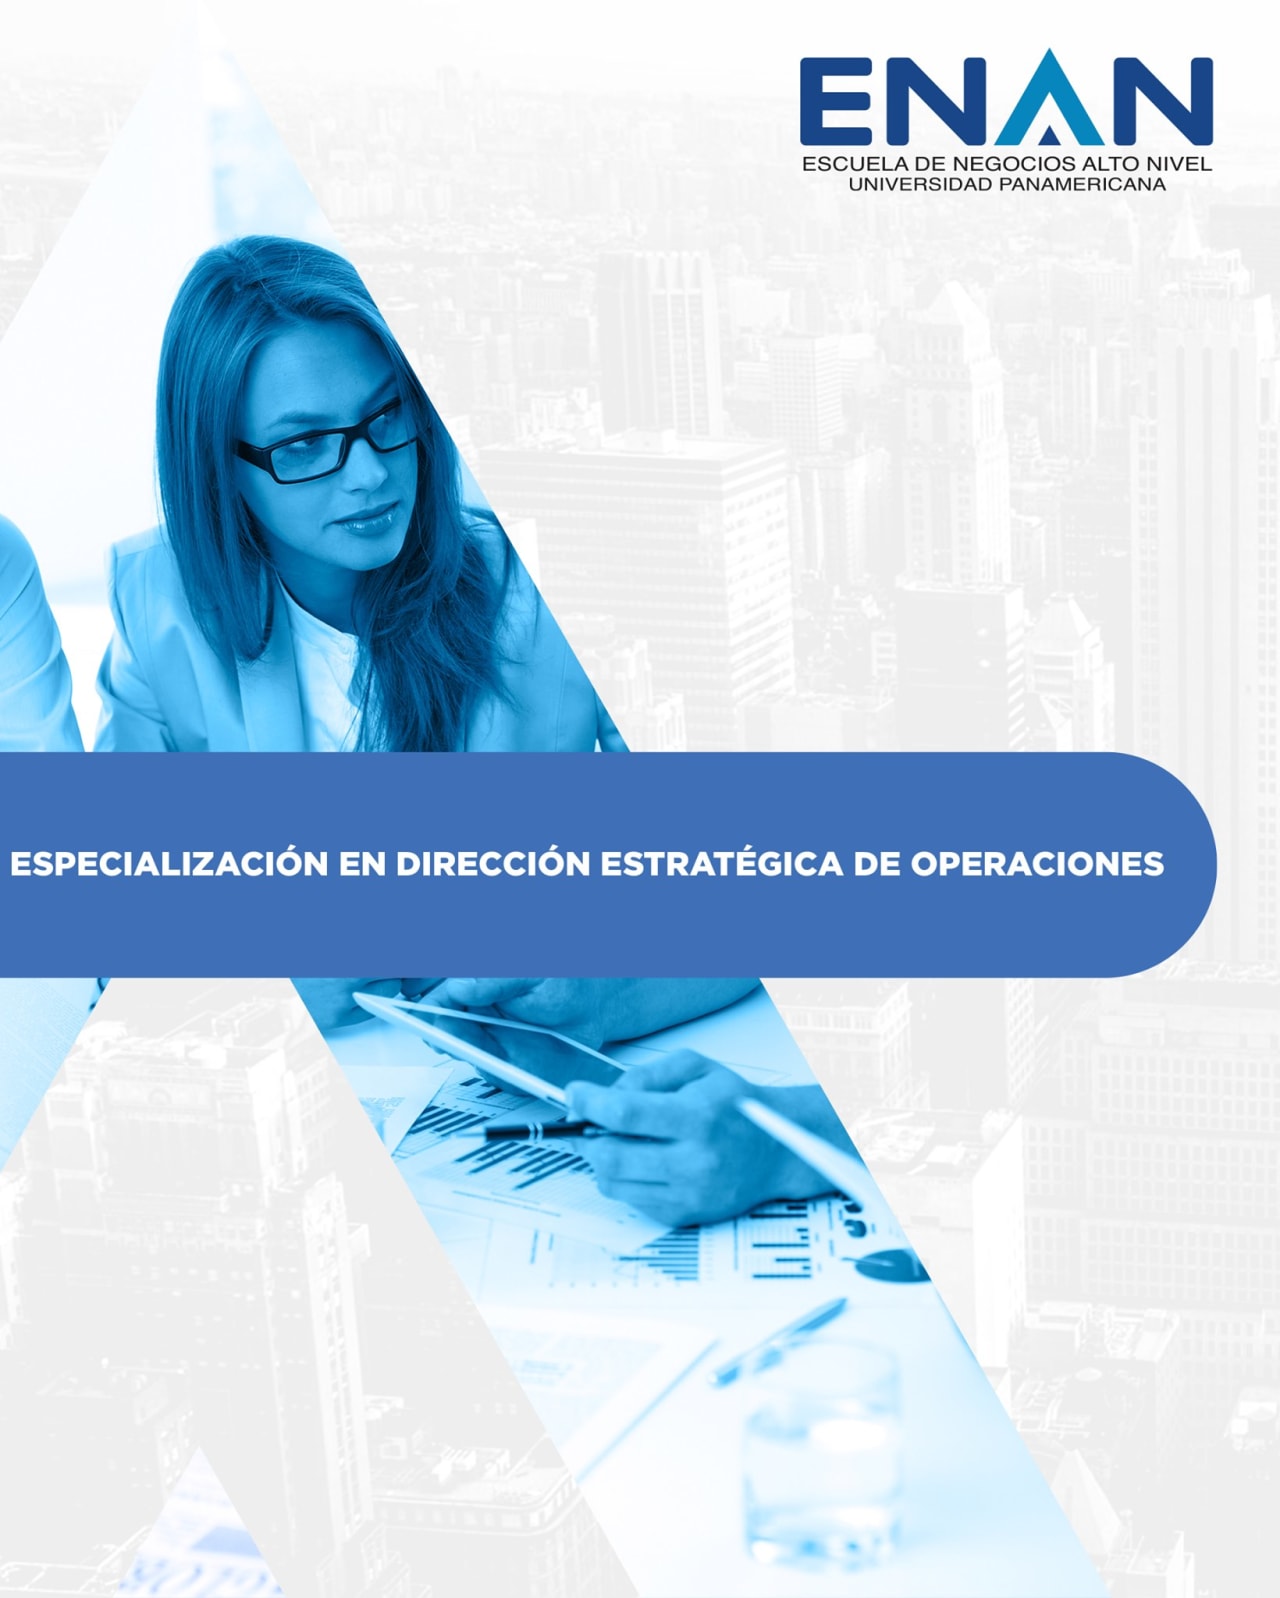 Escuela de Negocios Alto Nivel - Universidad Panamericana de Guatemala Especialización en Dirección Estratégica de Operaciones